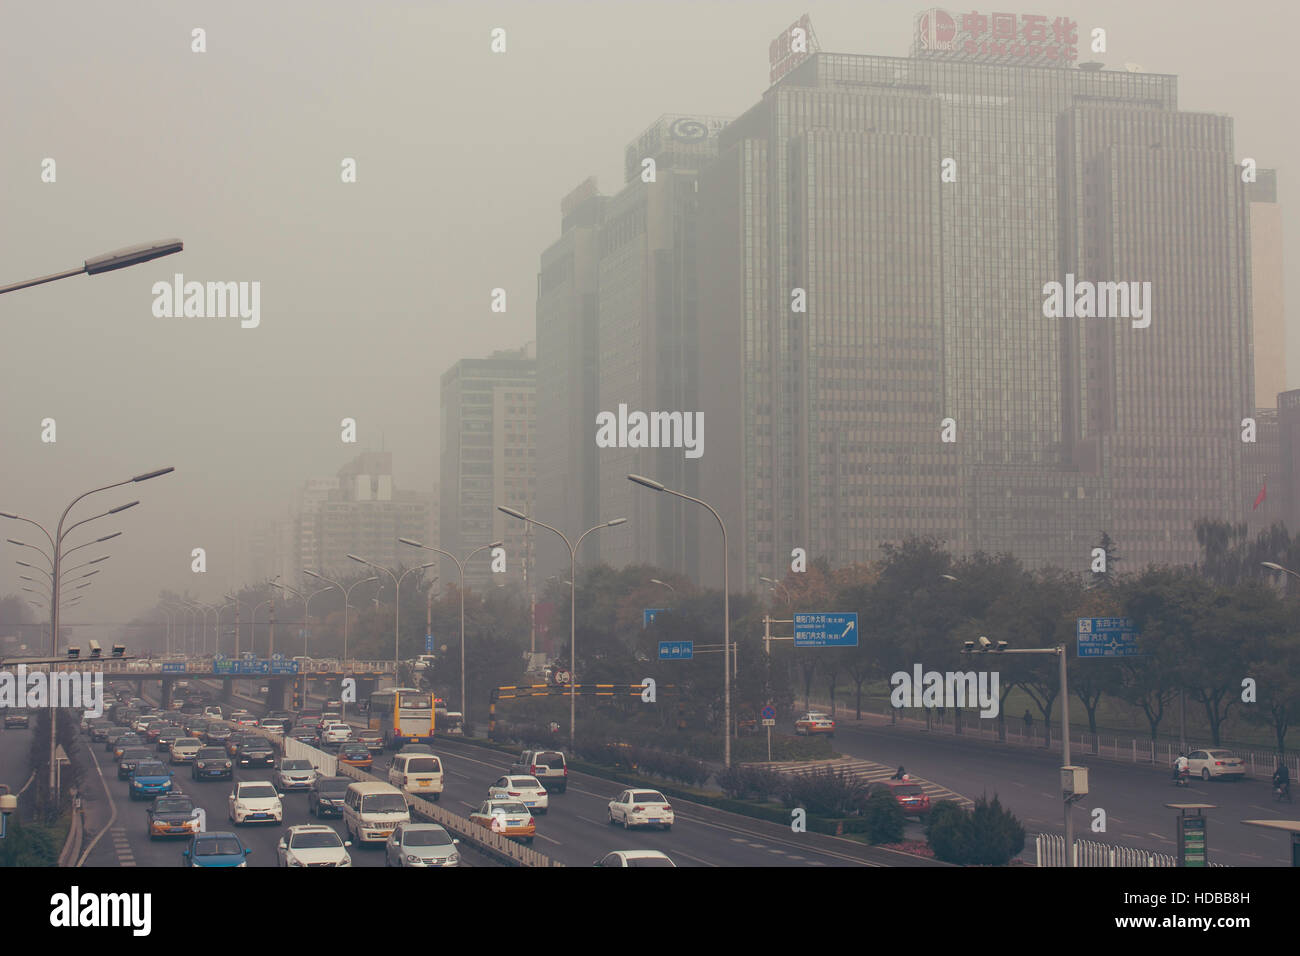 24 octobre 2014 - Beijing Chine,. La pollution de l'air à Beijing Chine centre-ville, d'innombrables voitures coincé sur la route, le bâtiment beides(la Chine sont Sinopec Banque D'Images